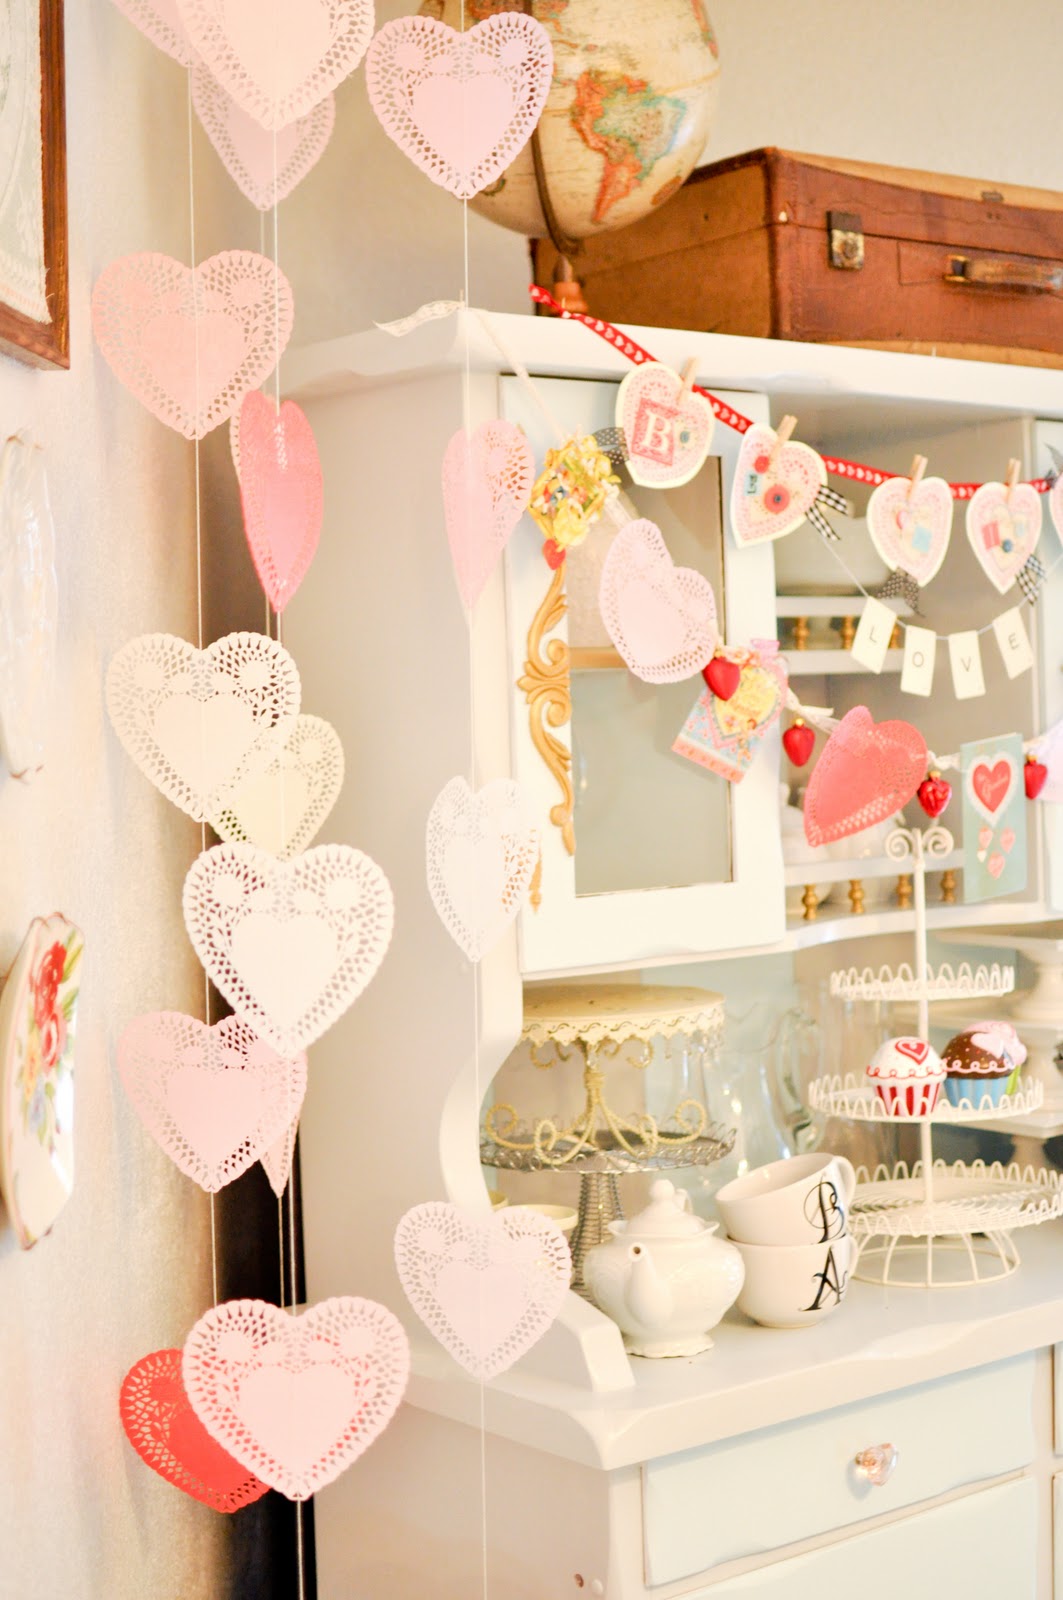 DIY Valentine's Day Heart Decoration